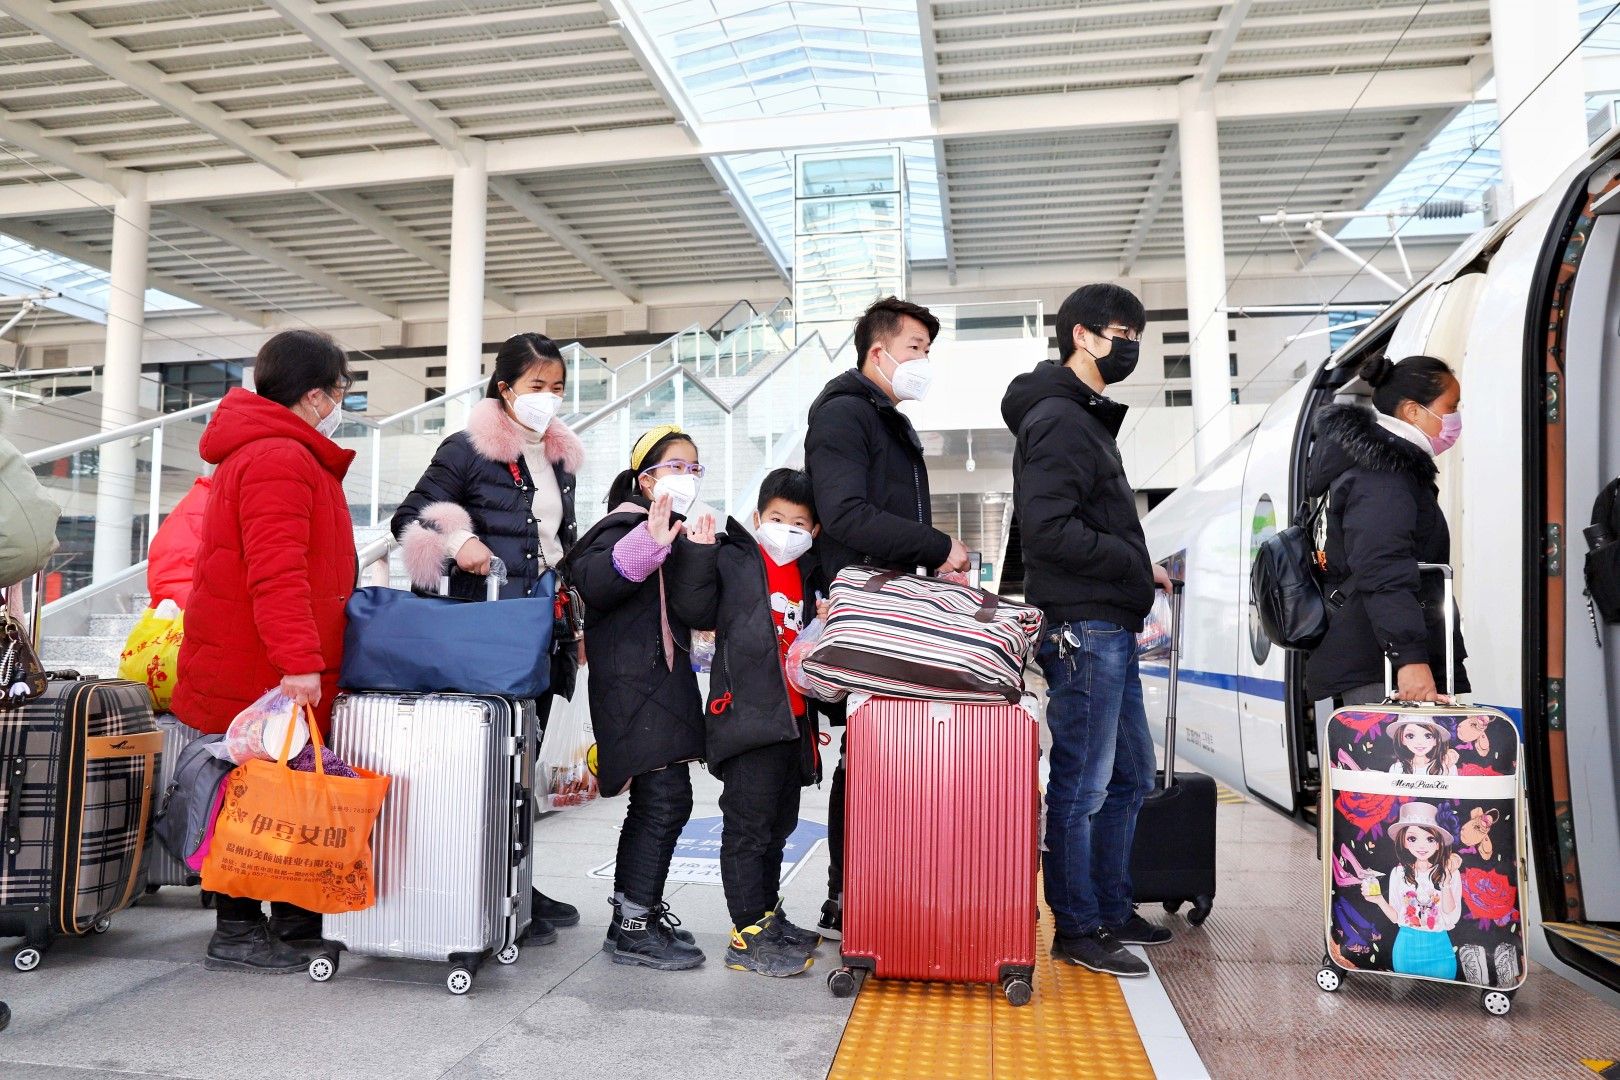 От Пекин тръгва специален влак, който превозва работници заедно с техните семейства